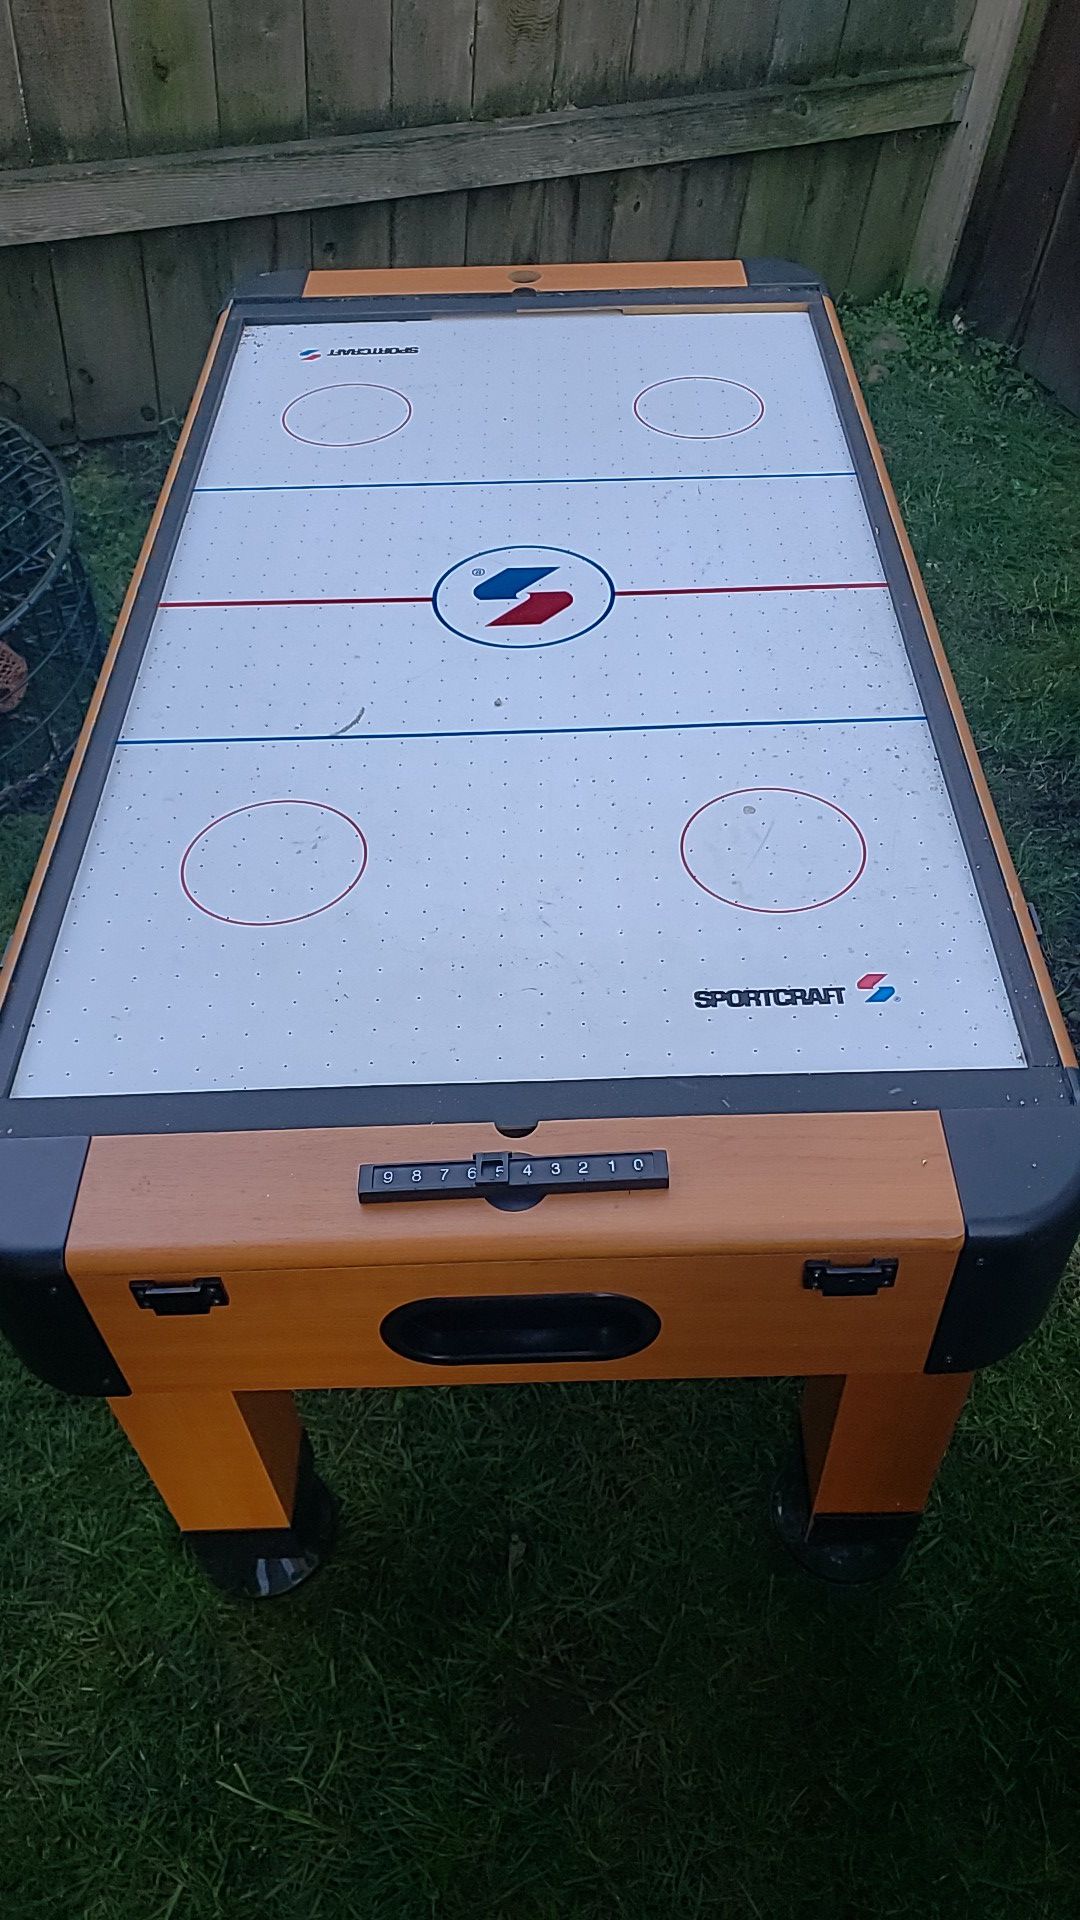 Foos ball / air hockey table